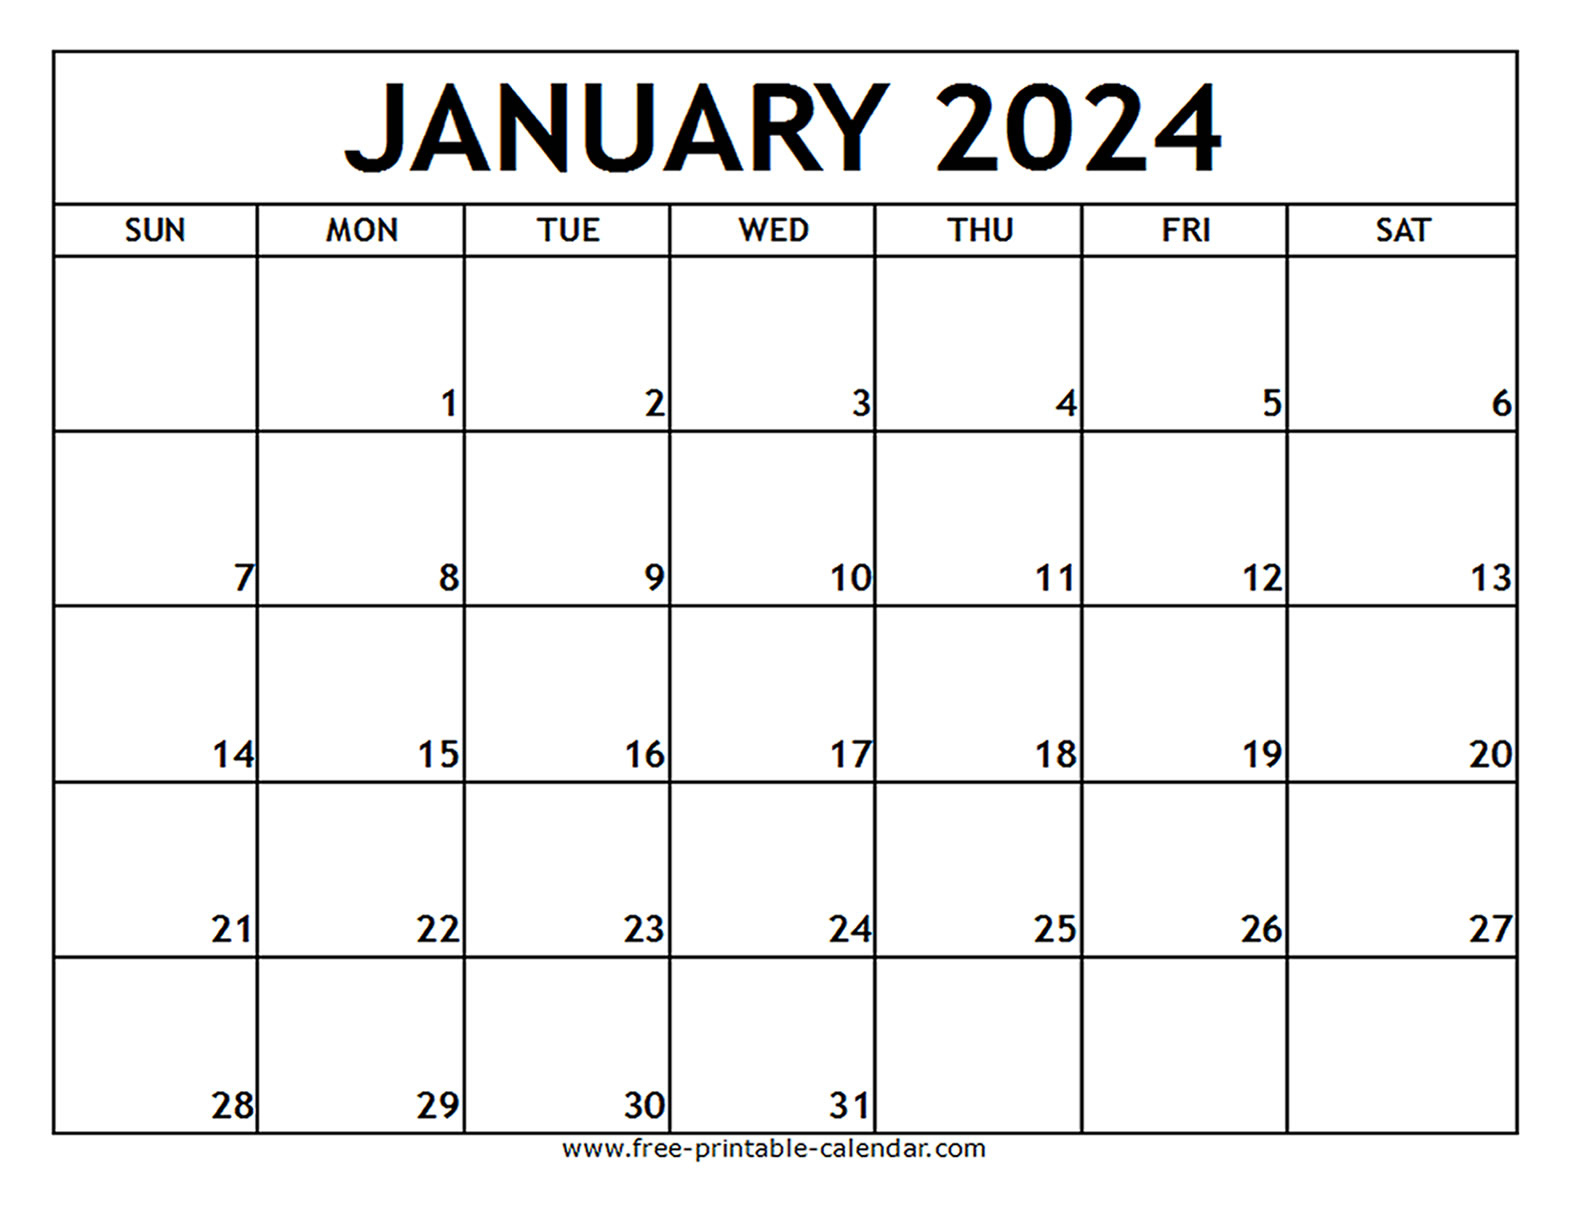 January 2024 Printable Calendar - Free-Printable-Calendar | January 2024 Calendar Printable Free